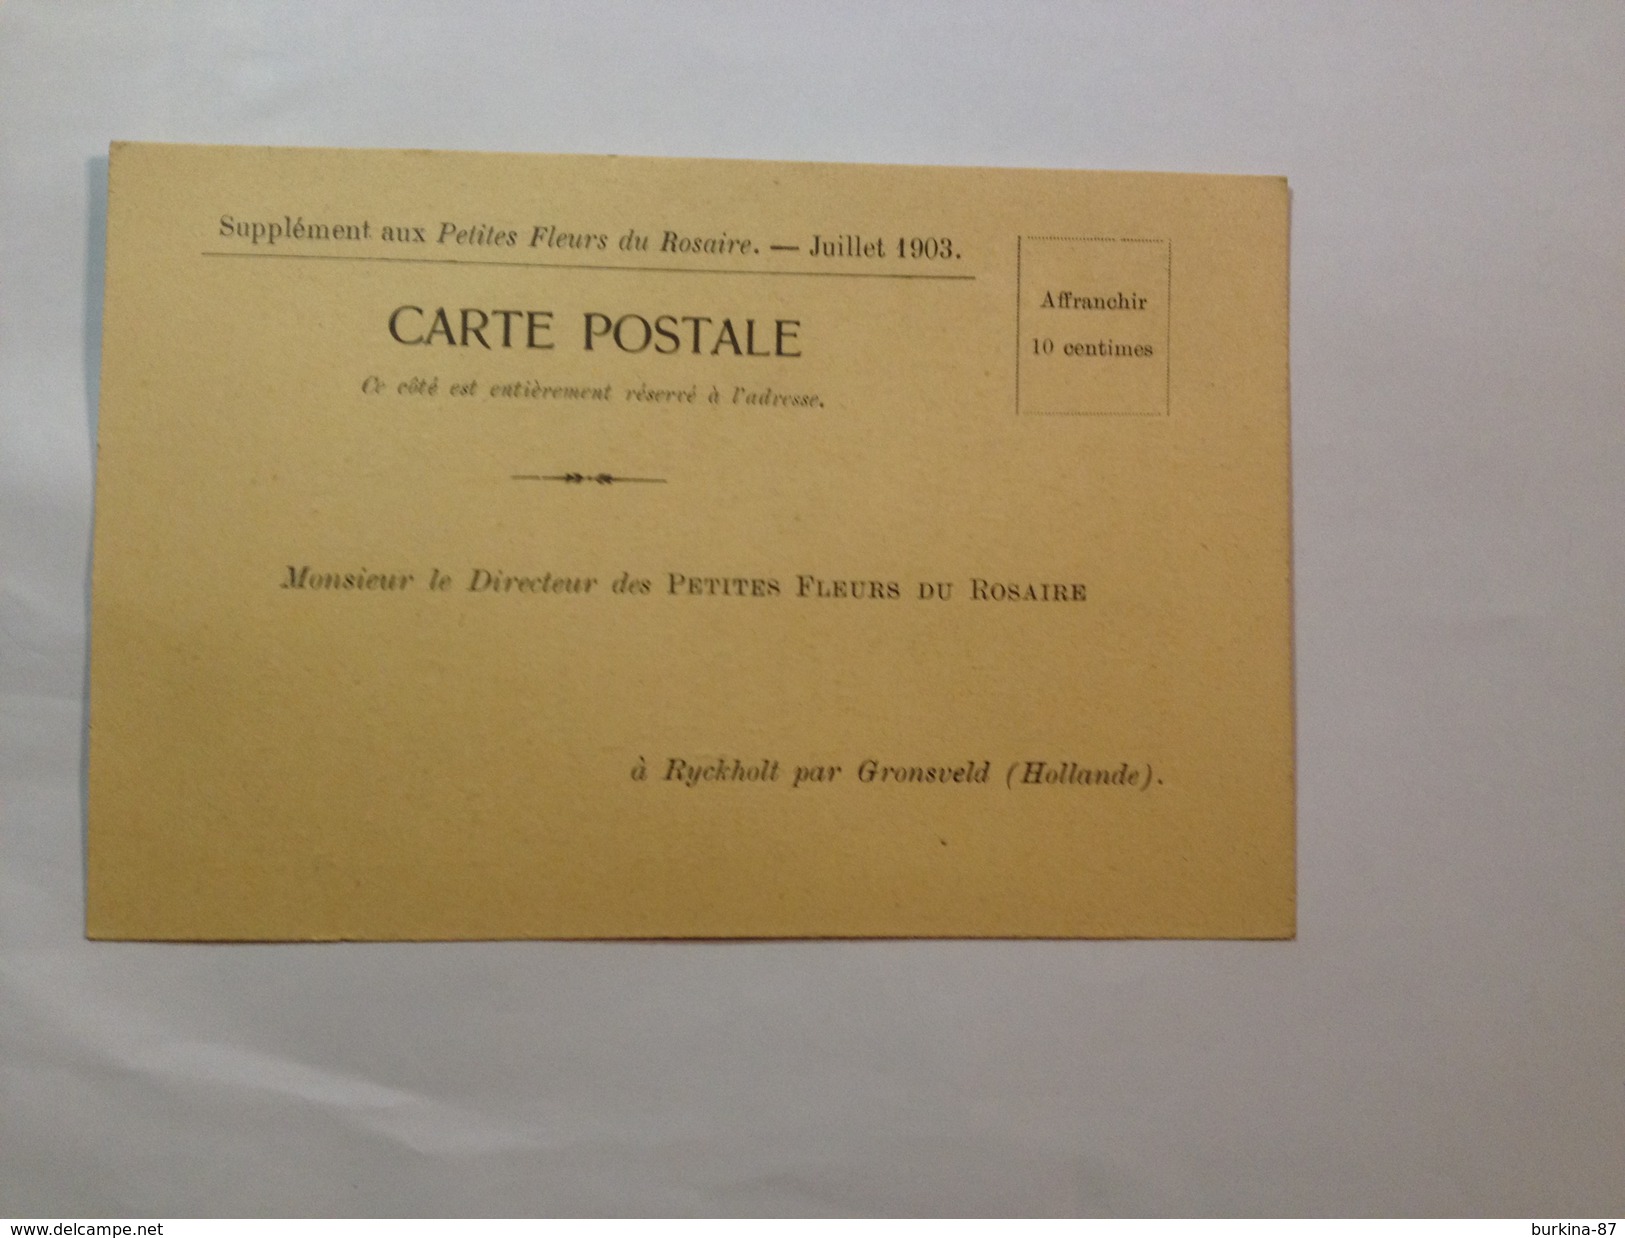 CARTE POSTALE, LES PETITES FLEURS DU ROSAIRE, 1903, BULLETIN ABONNEMENT VIERGE - Français